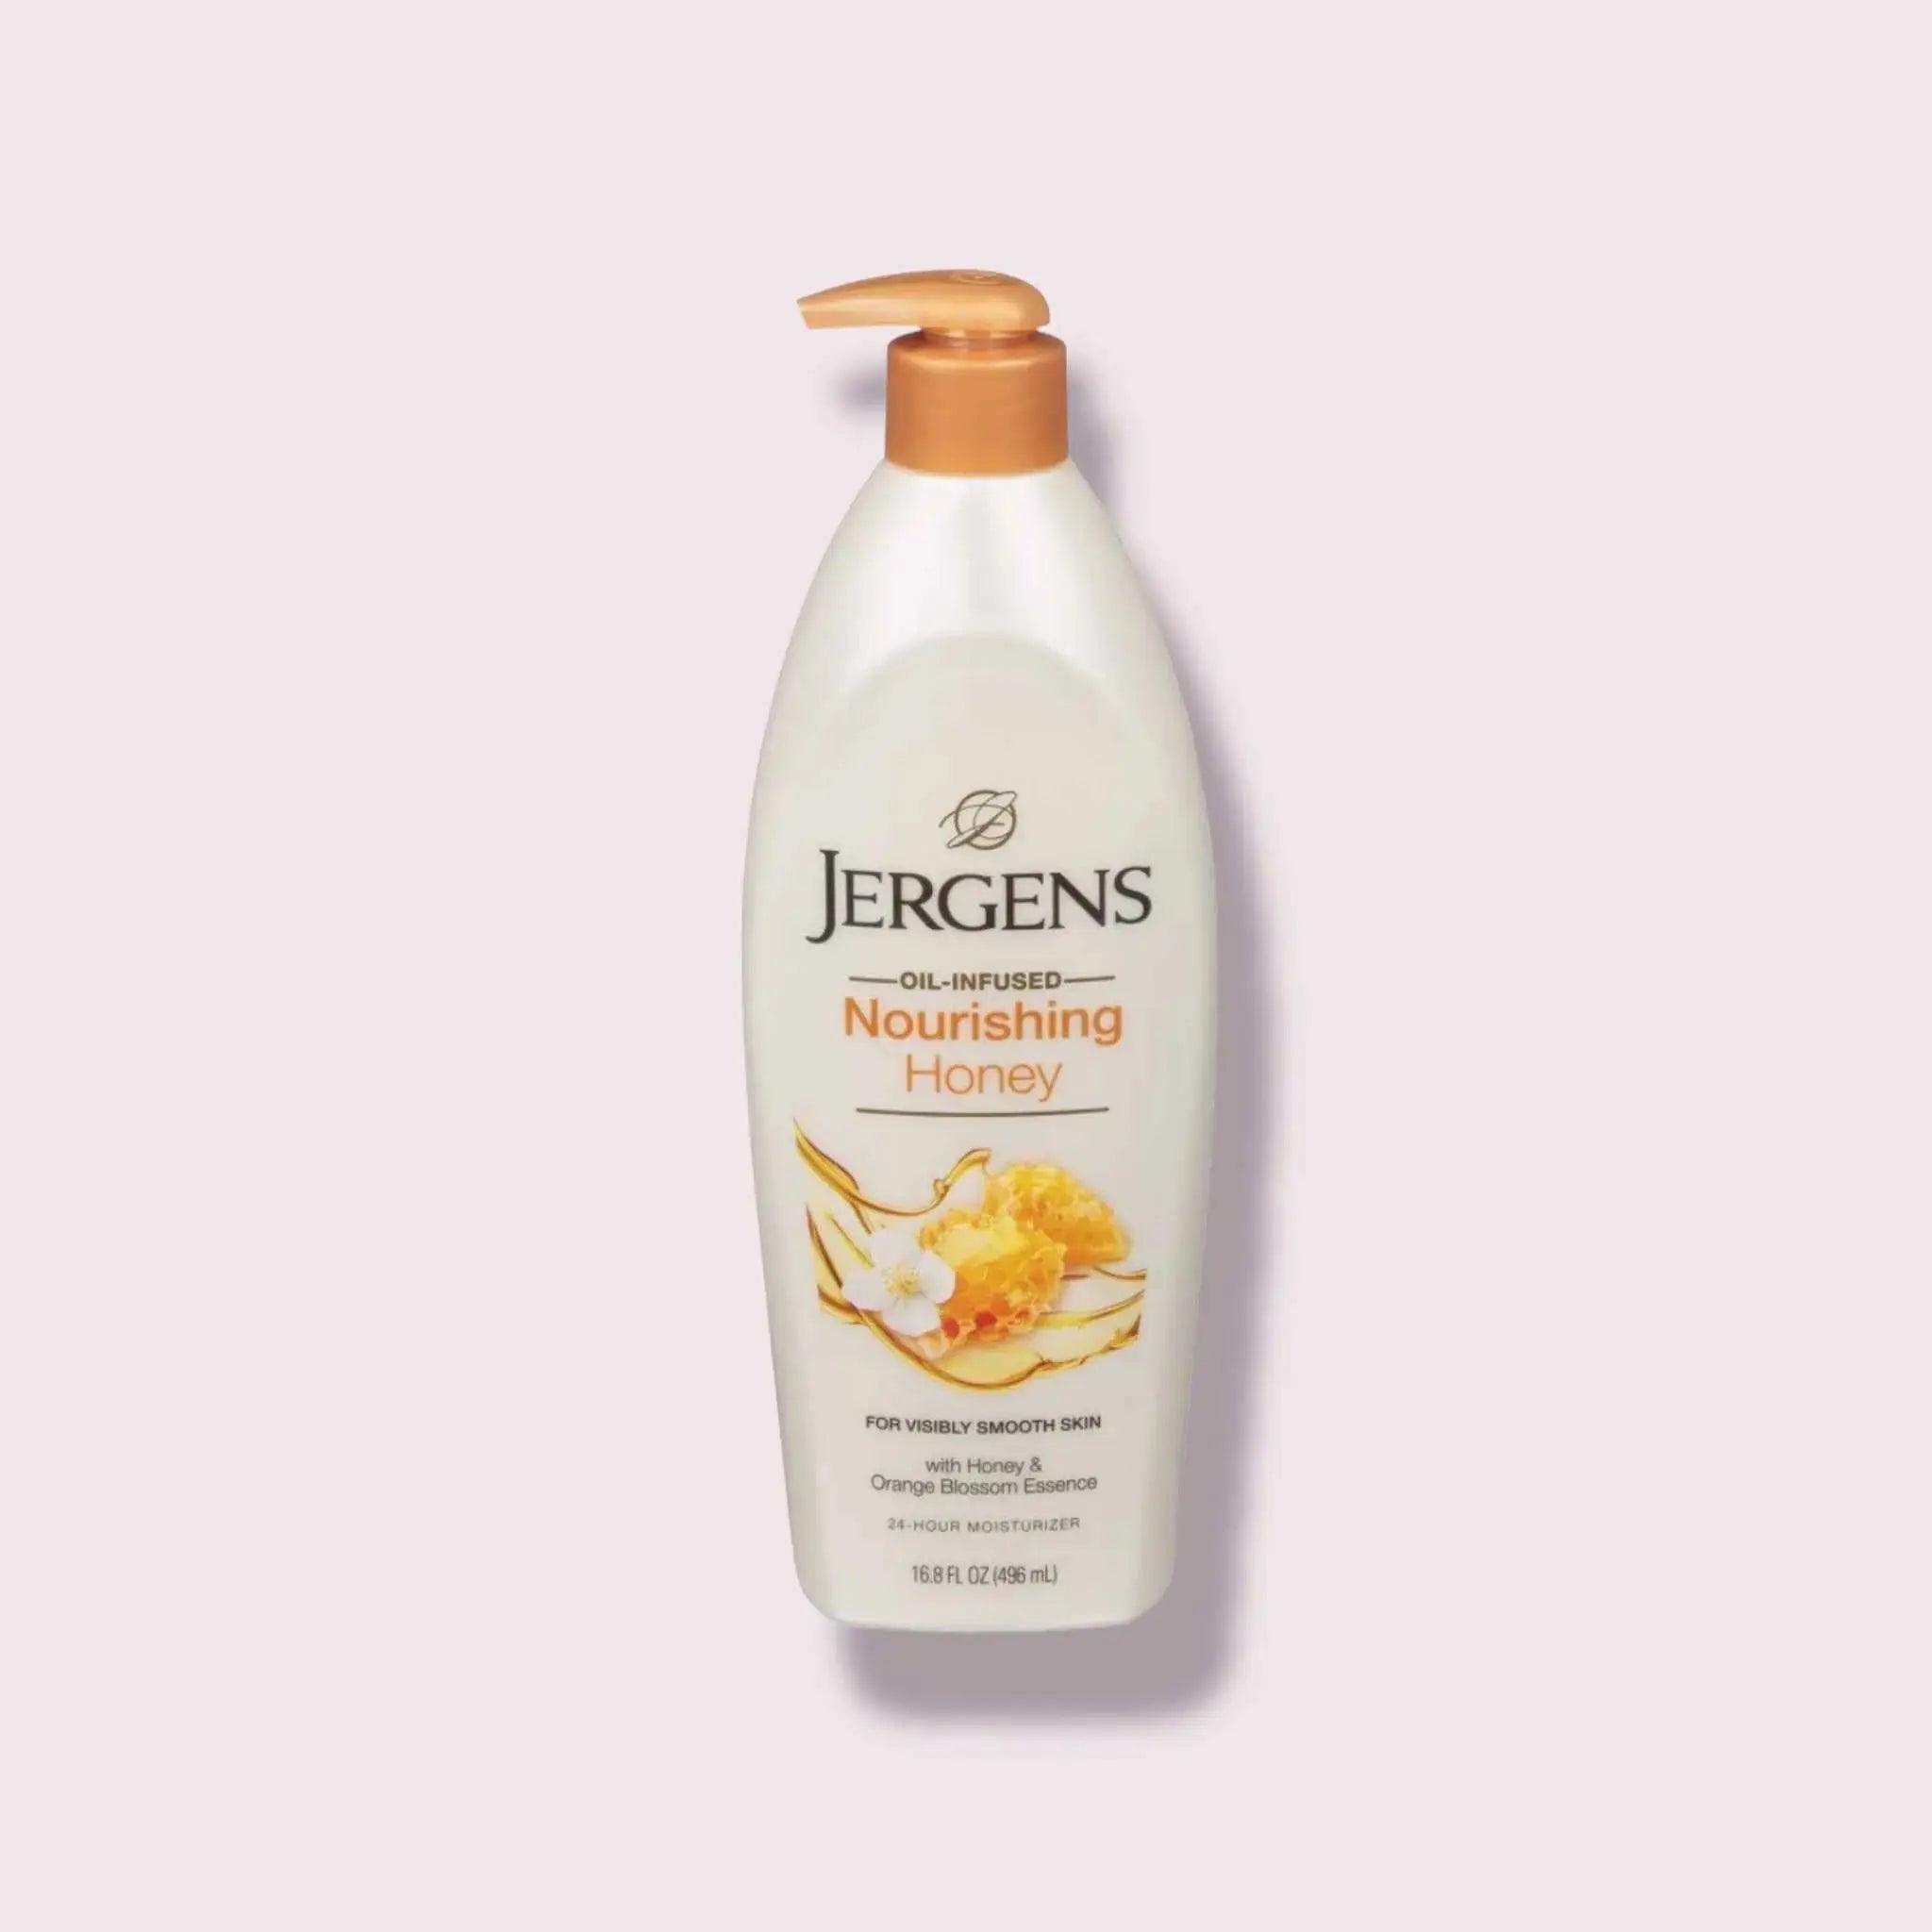 Jergens Nourishing Honey Dry Skin Body Lotion, 16.8 fl oz - Honesty Sales U.K